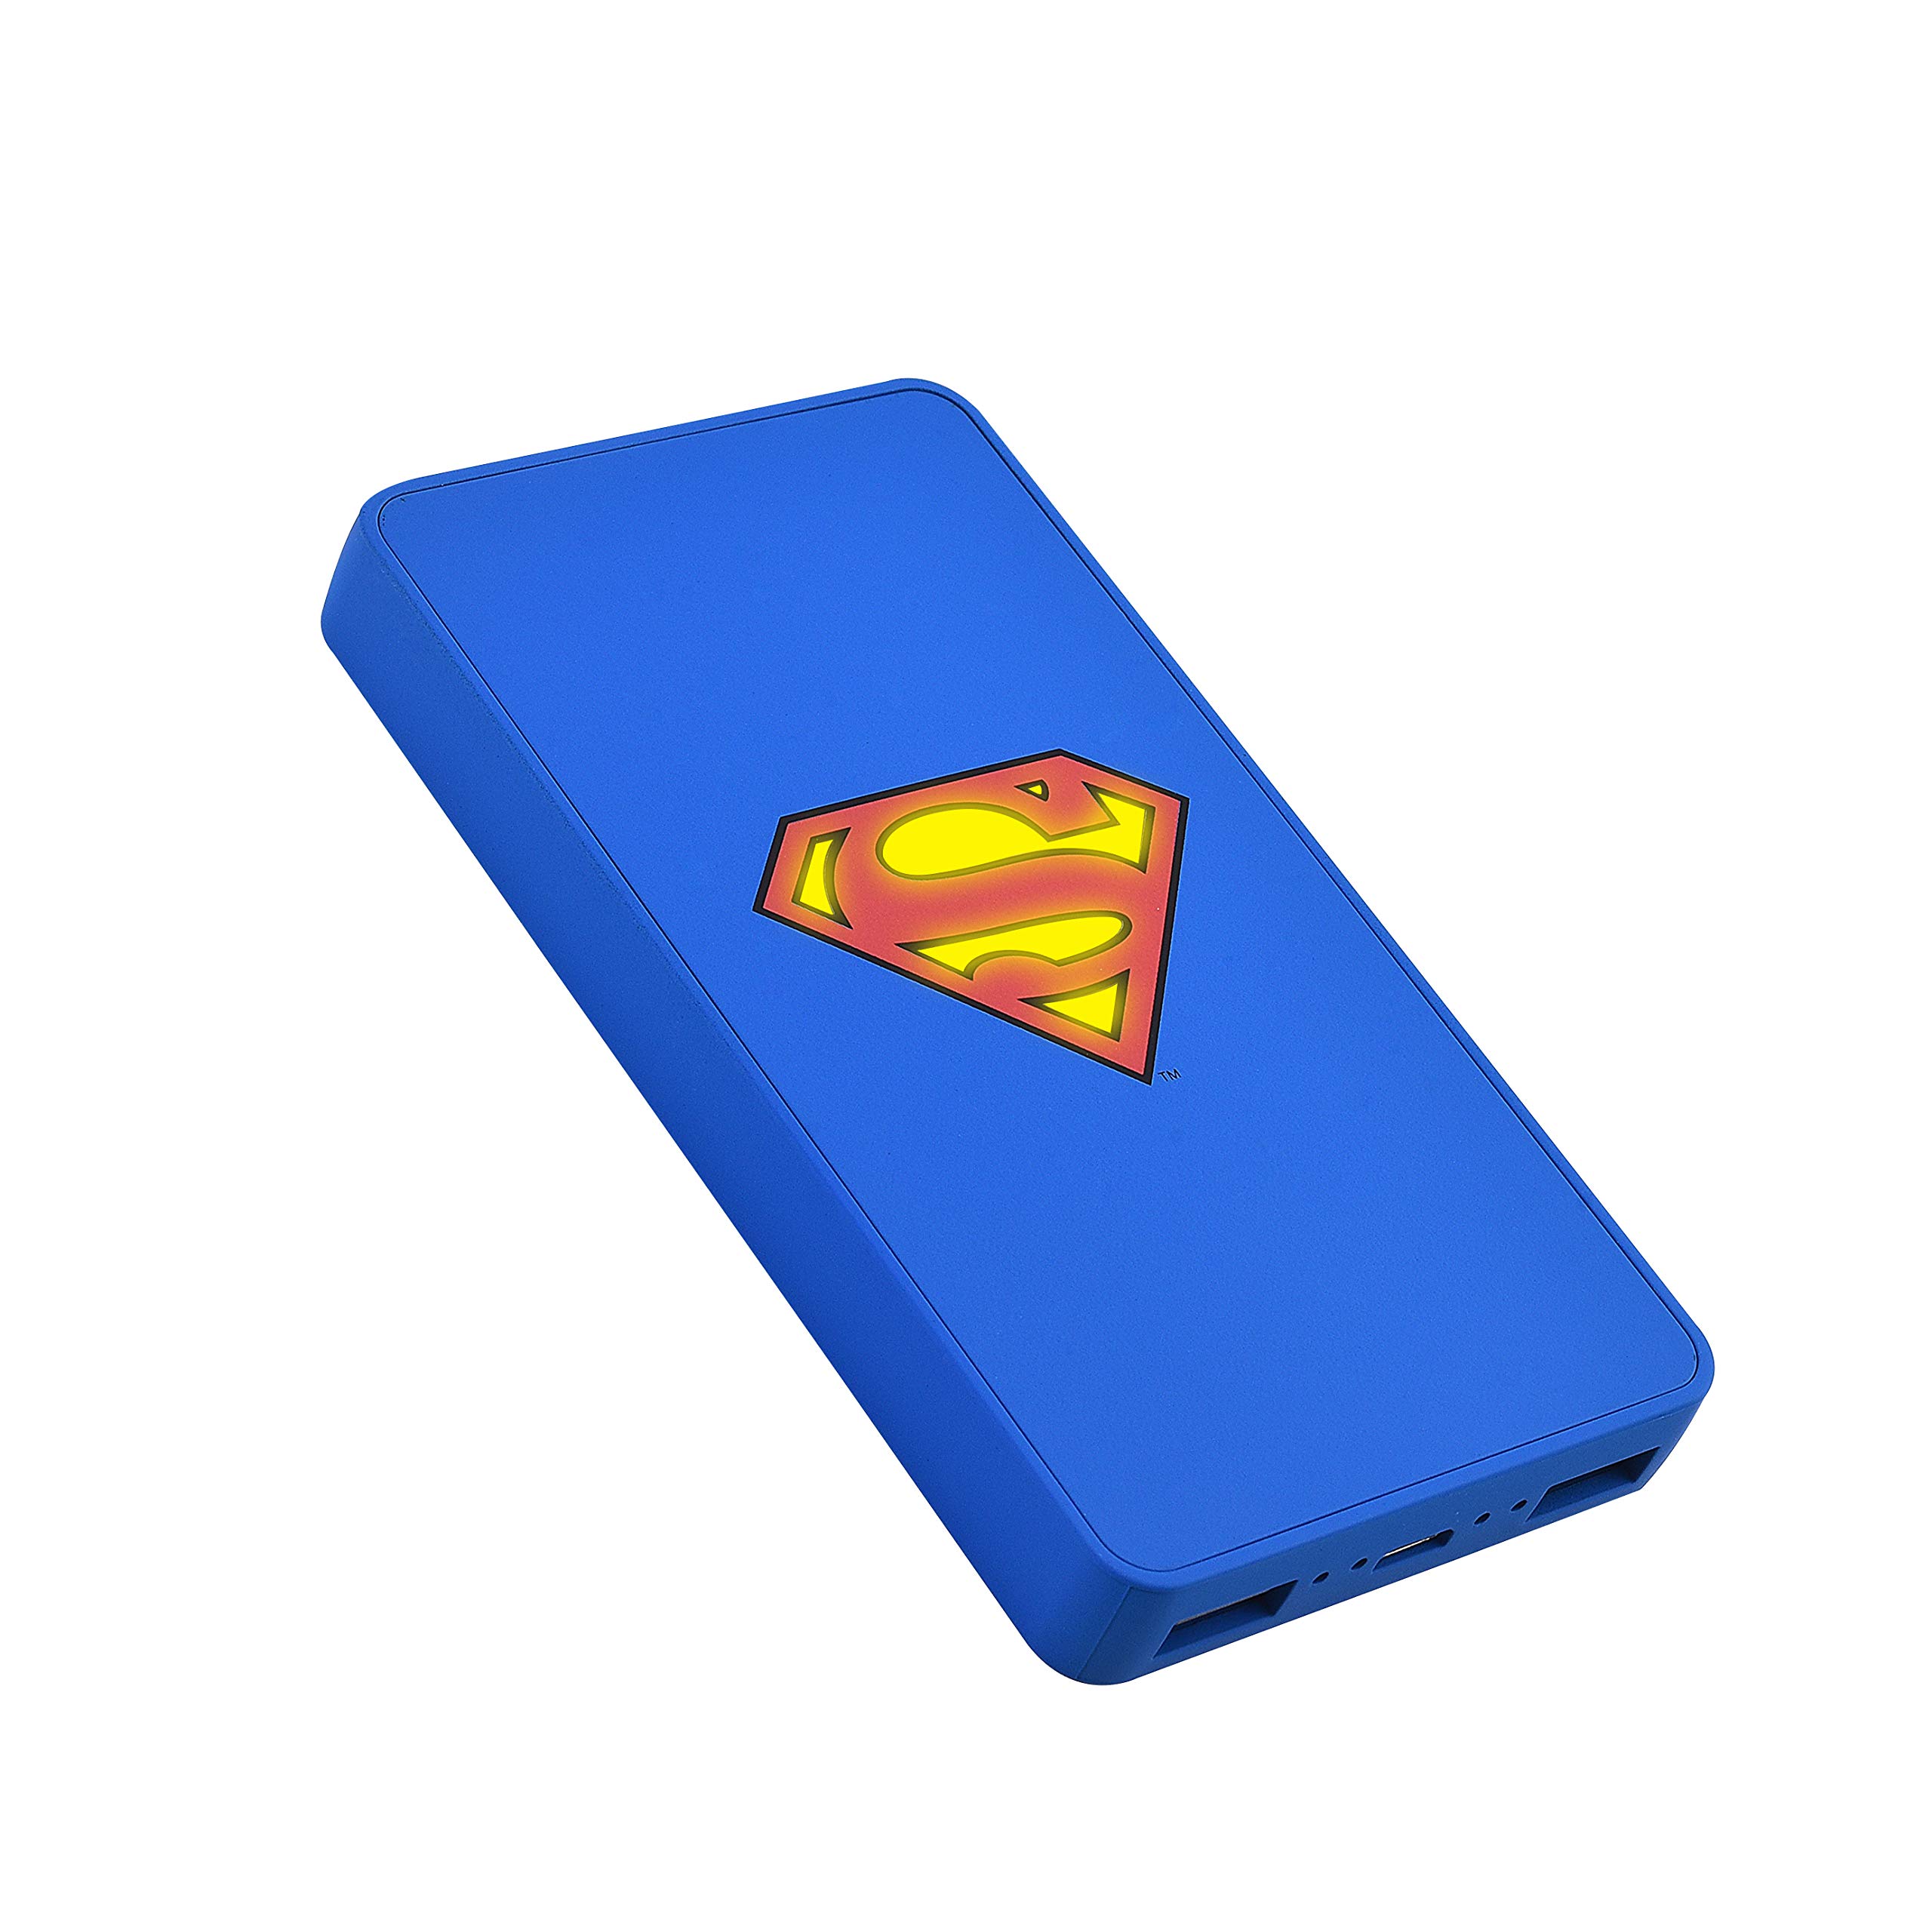 Emtec - Power Essentials - 5000 mAh - Superman - ECCHA5U900DC01